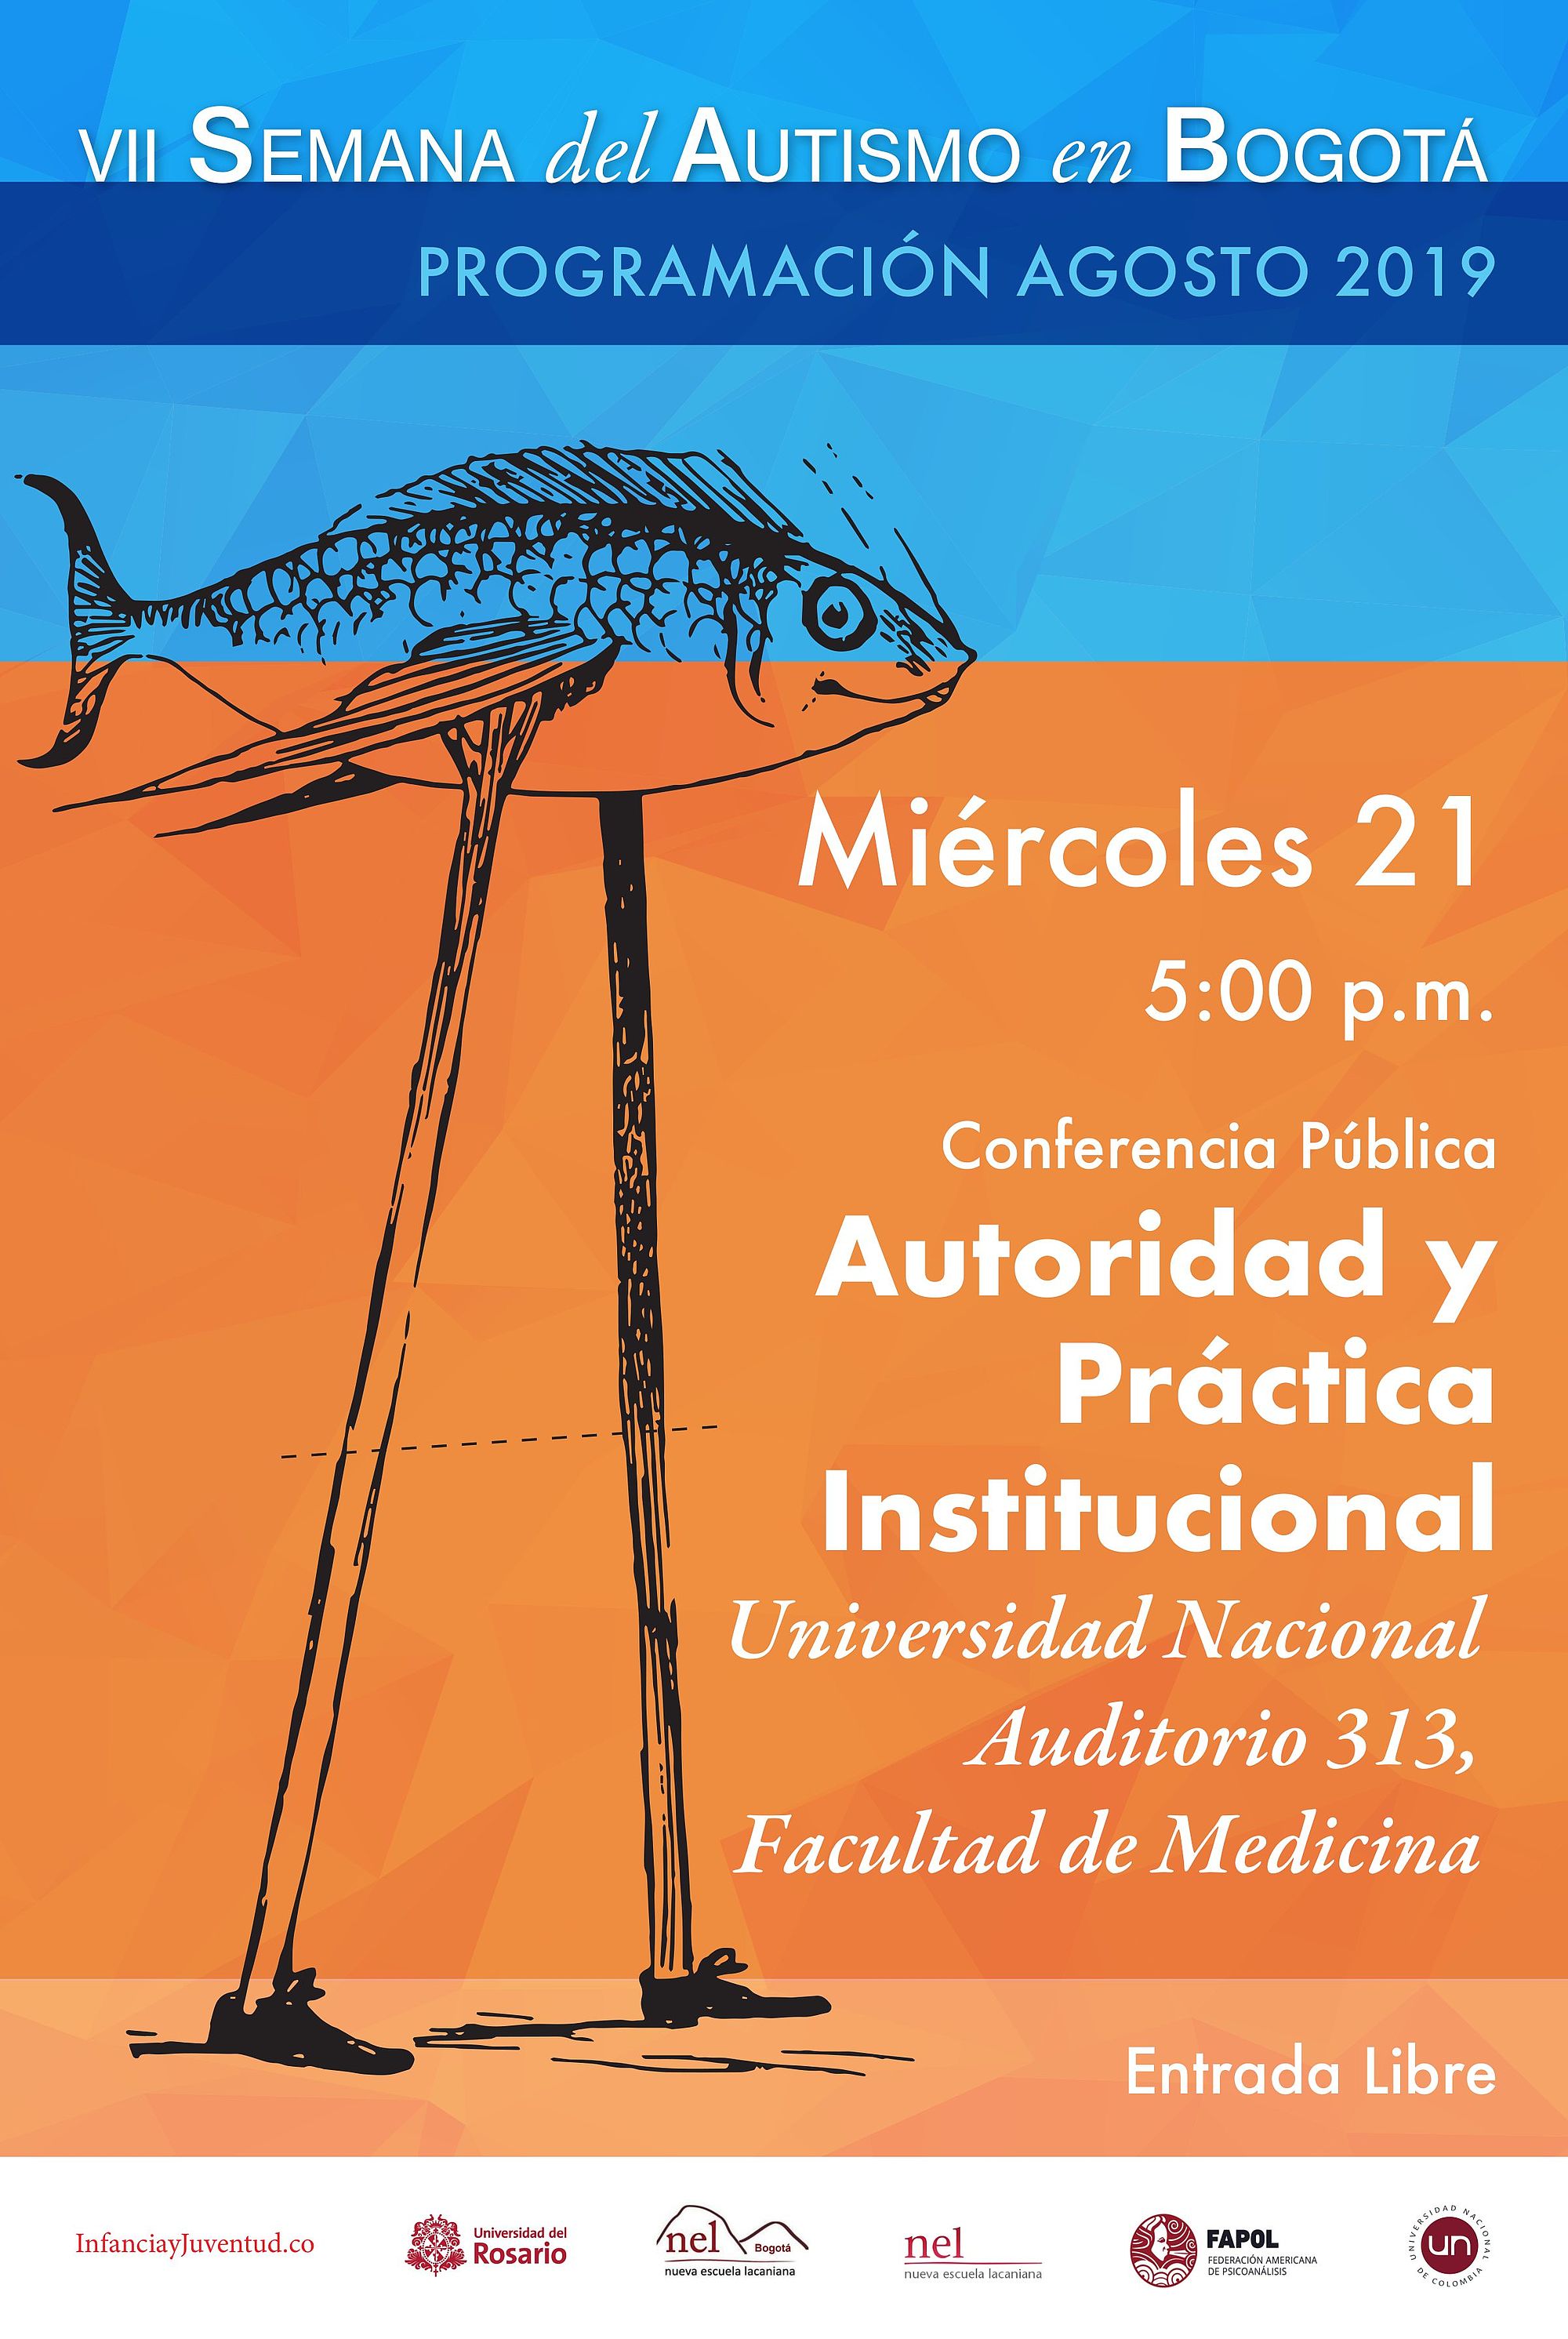 VII Semana del Autismo en Bogotá - Conferencia "Autoridad y práctica institucional", 21 de agosto, 5:00 p.m.